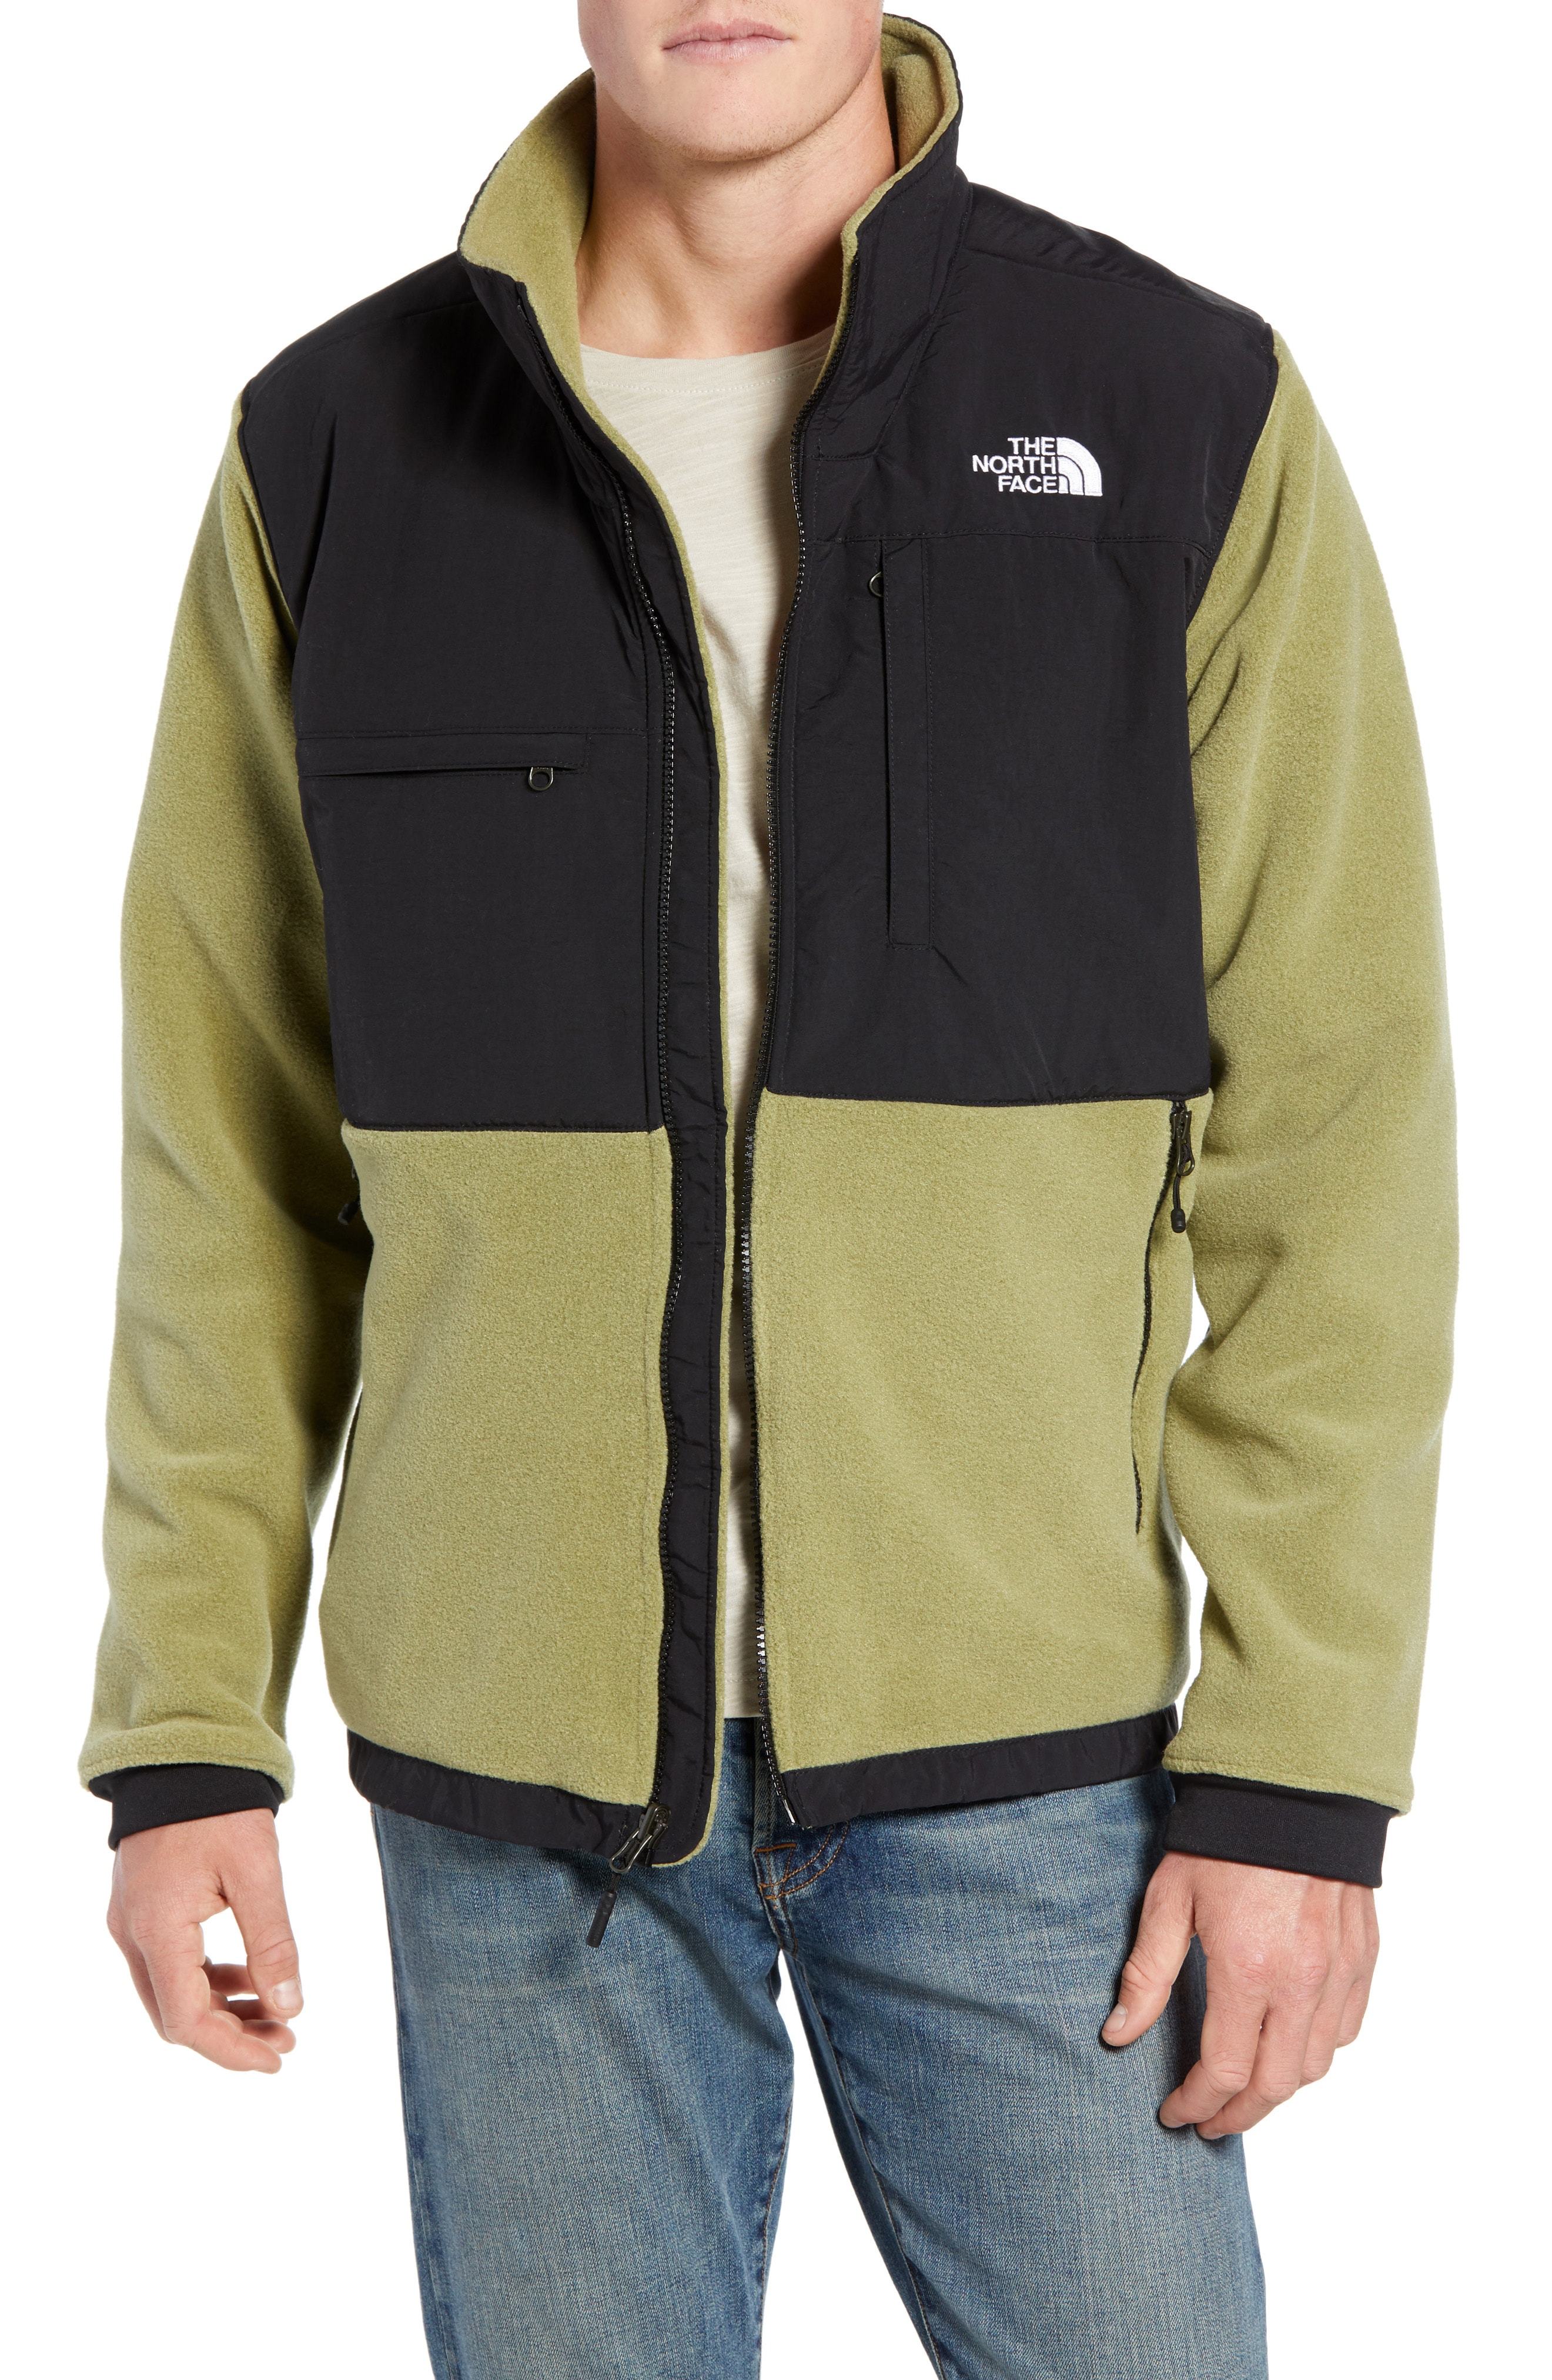 The North Face Denali 2 Jacket, $179 